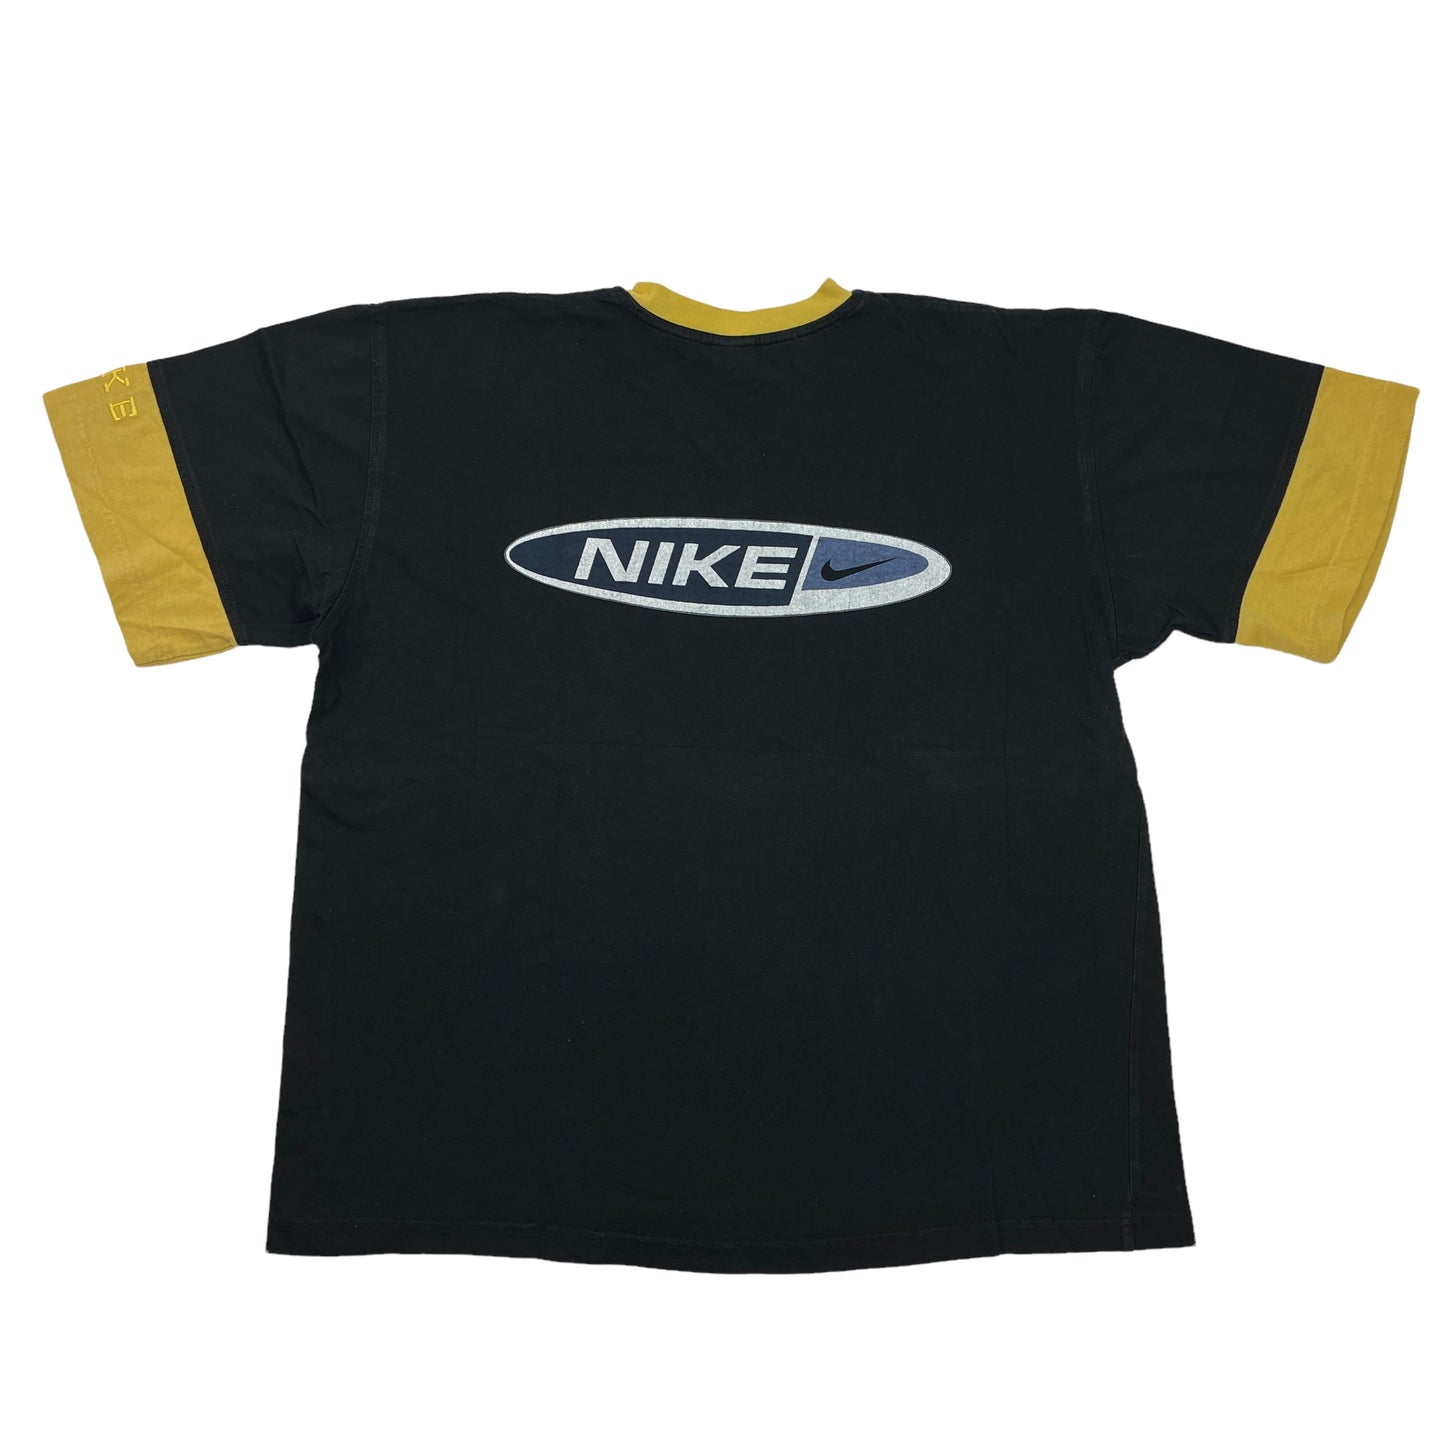 01088 Nike Vintage 90s Tshirt